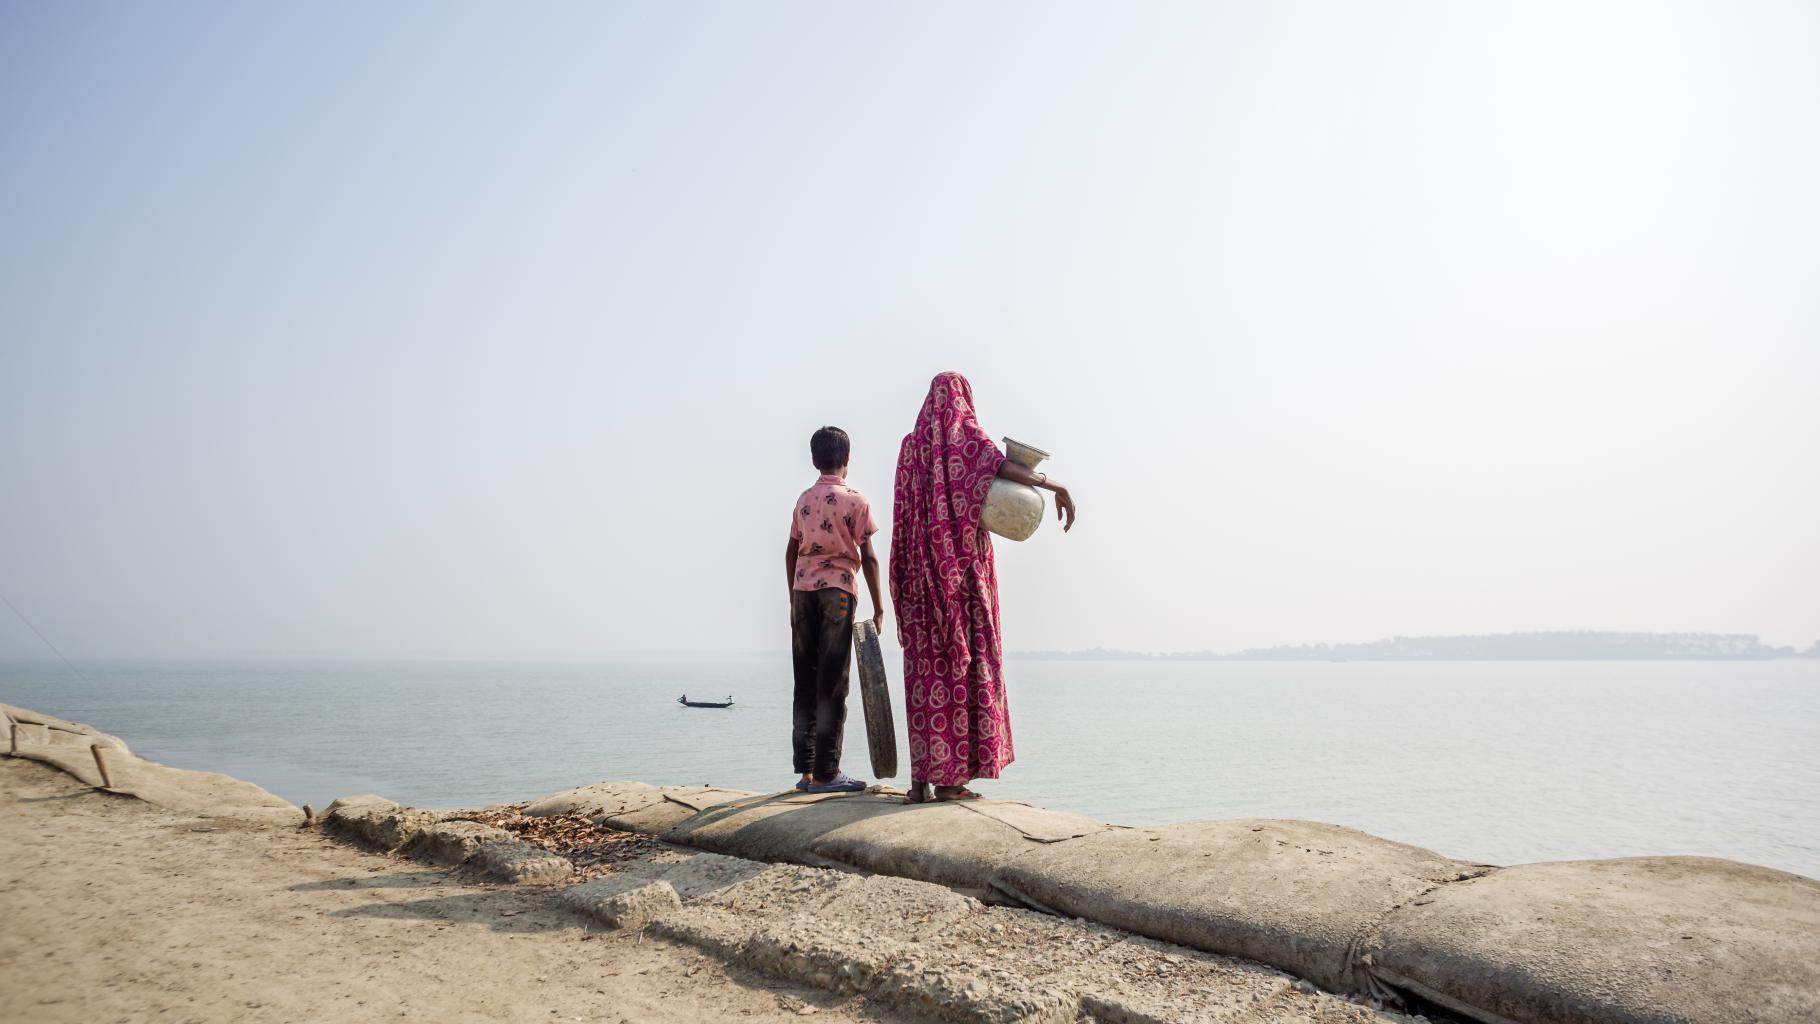 Eine Mutter steht mit ihrem Kind am Rande einer Küste. Unter dem Arm trägt sie einen Krug zum tranportieren von Wasser.